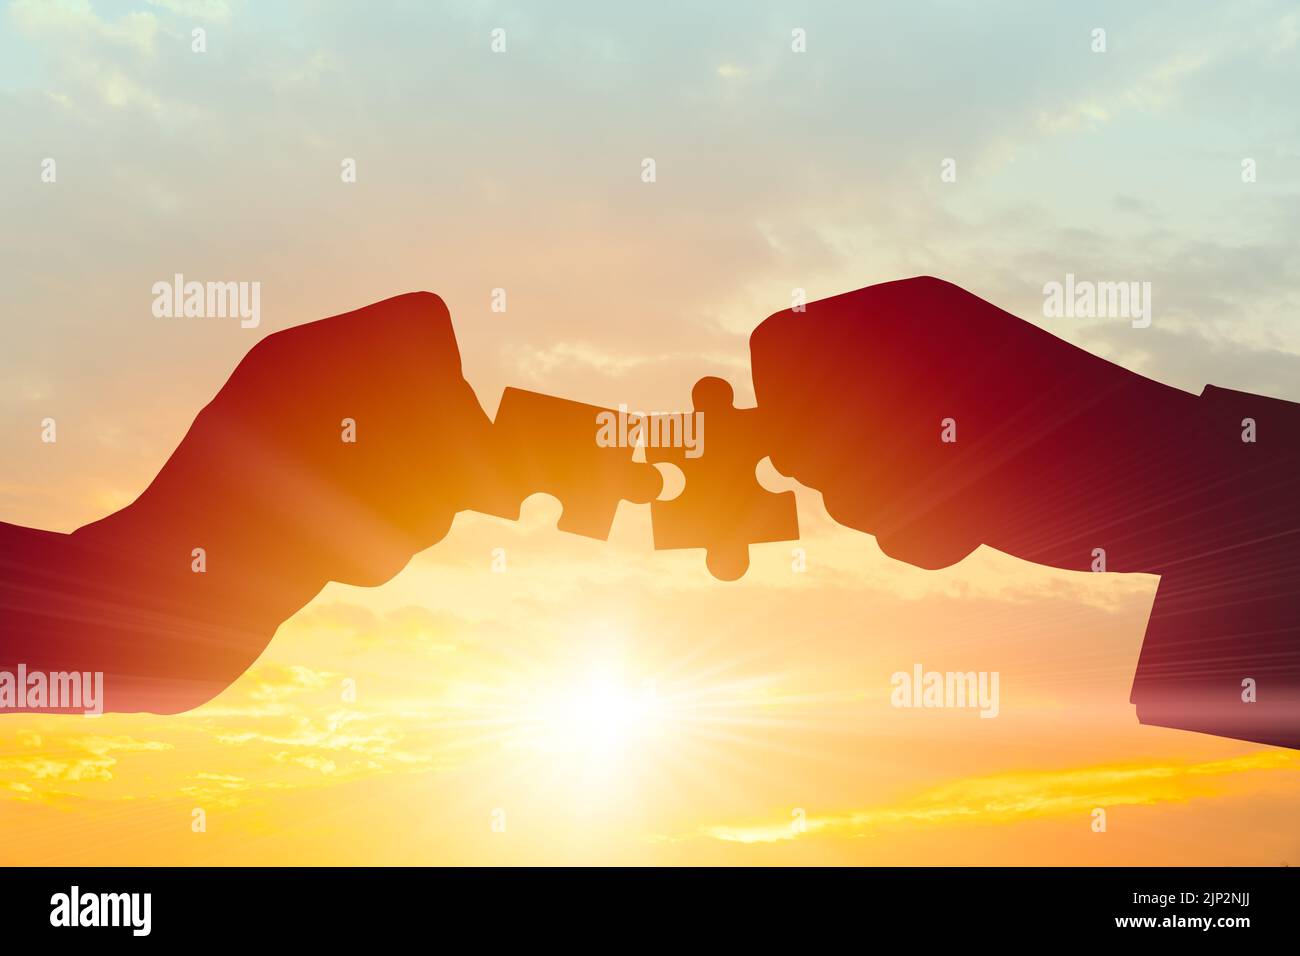 Business Teamwork, rejoindre le concept de partenariat et de coopération. Silhouette de deux mains reliant deux pièces de puzzle se connectent sur le ciel du matin. Banque D'Images